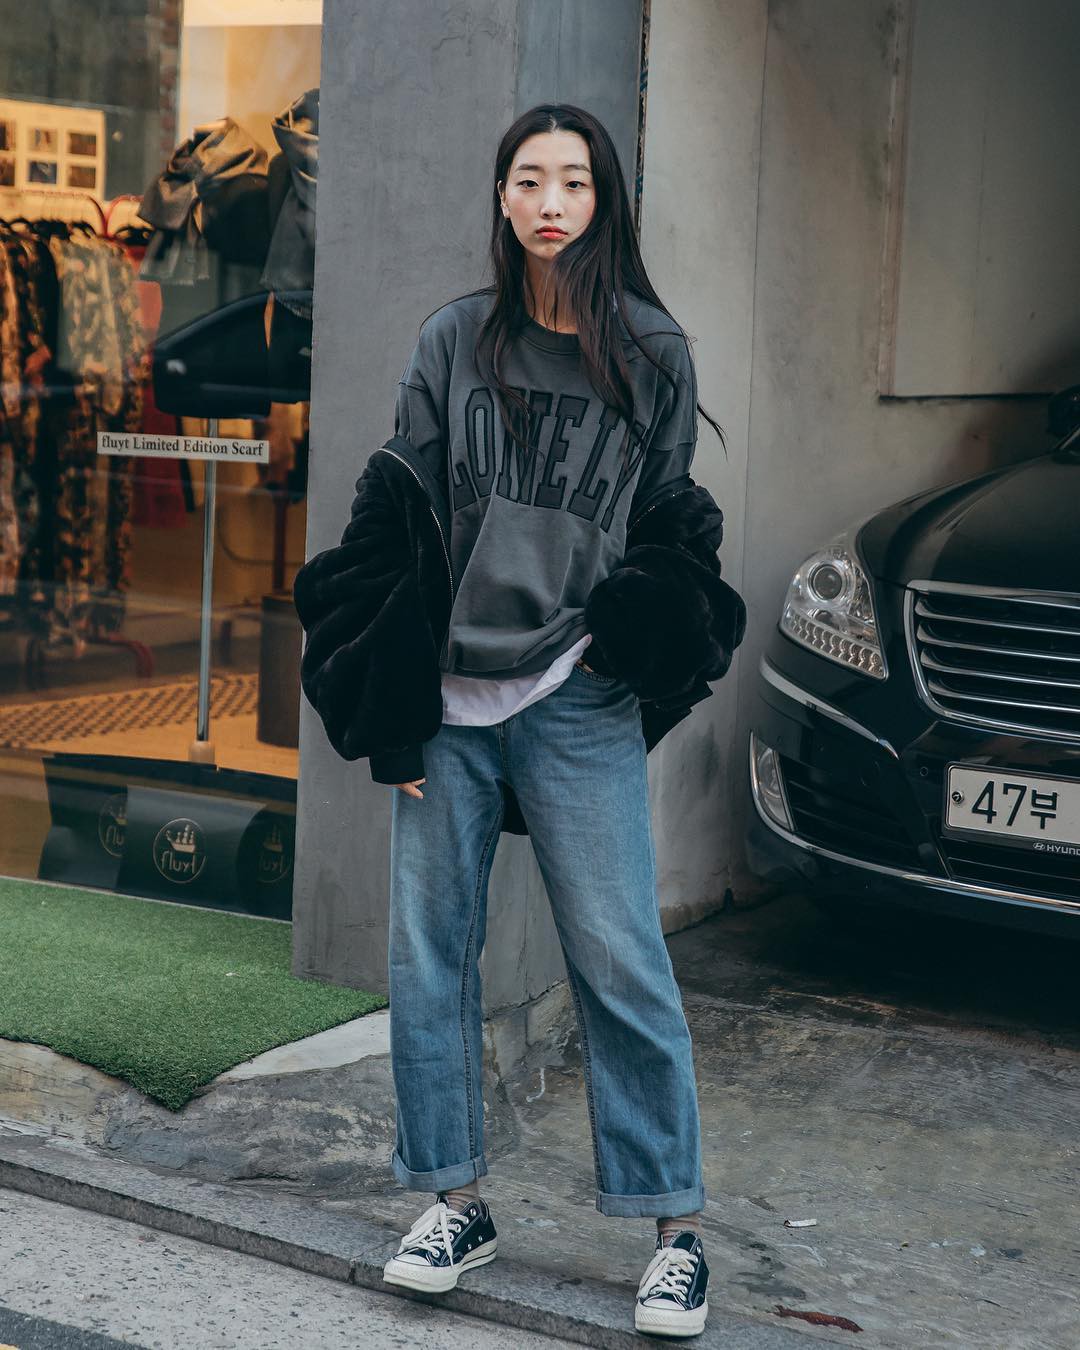 Street style không áo dạ, áo phao của giới trẻ Hàn tuần qua chính là gợi ý mix đồ tuyệt vời cho mùa đông không lạnh tại Hà Nội lúc này - Ảnh 9.